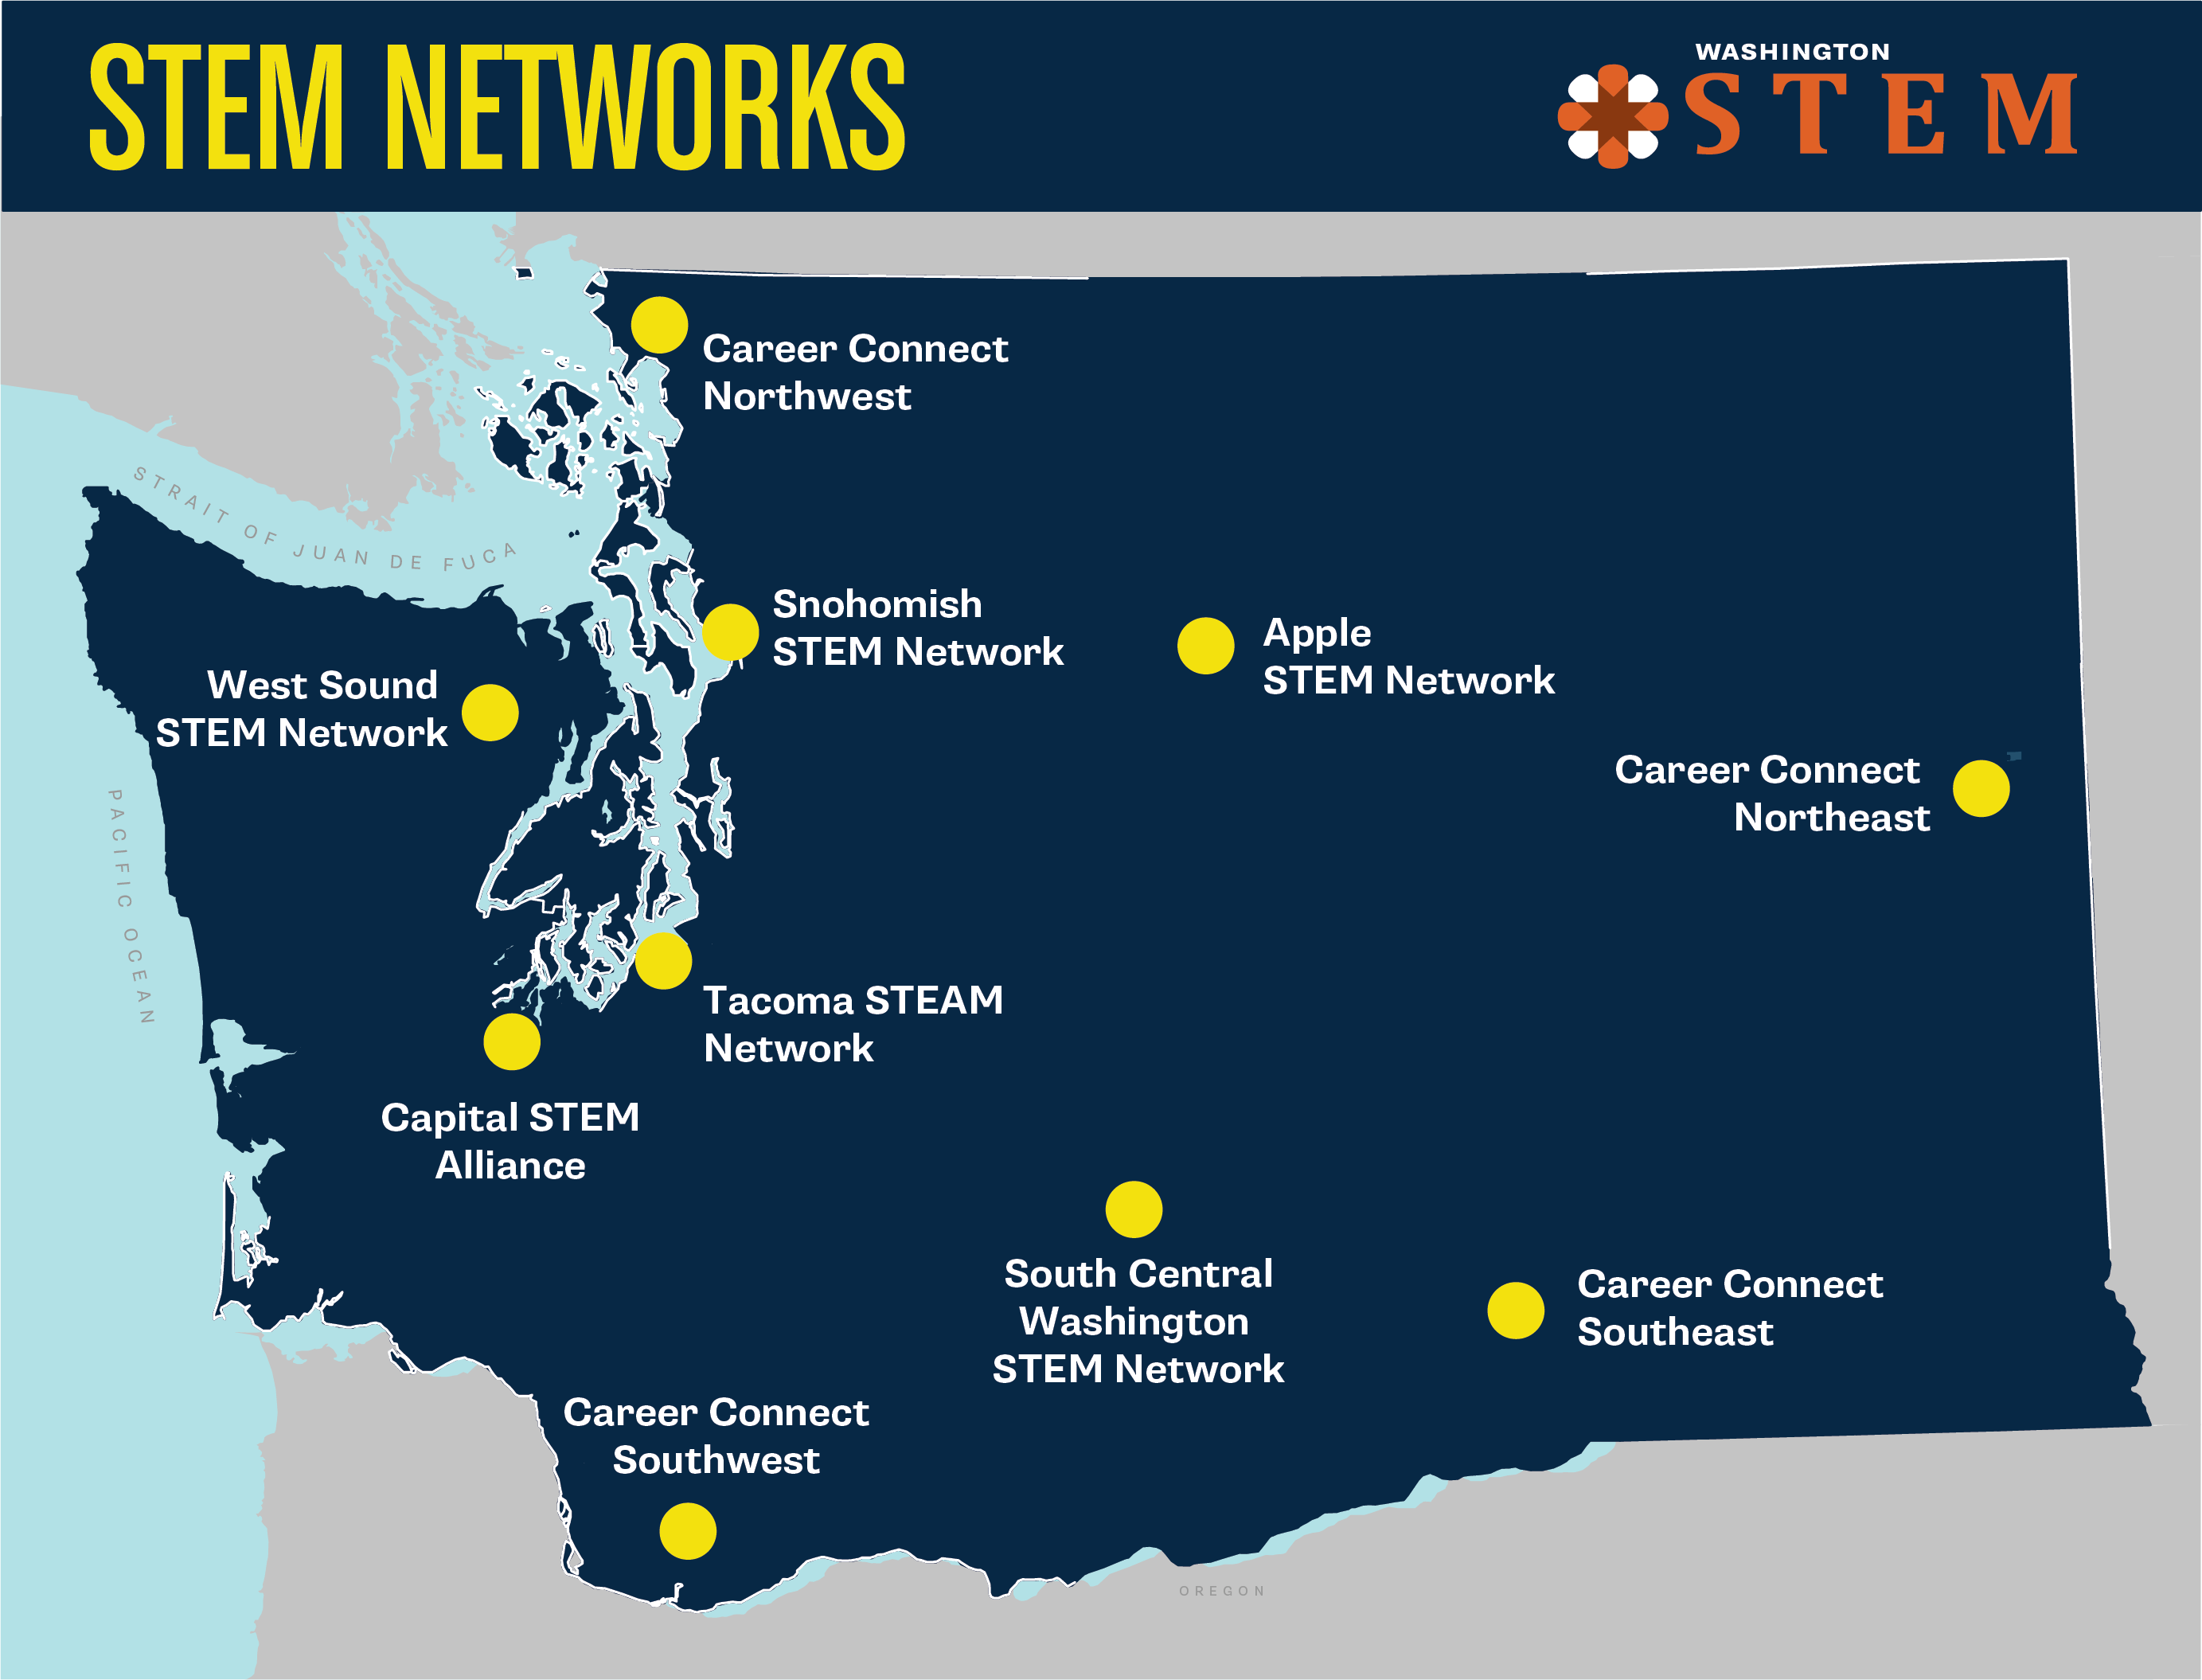 Washington State-kort i mørkeblåt med gule prikker, der viser netværksplaceringer